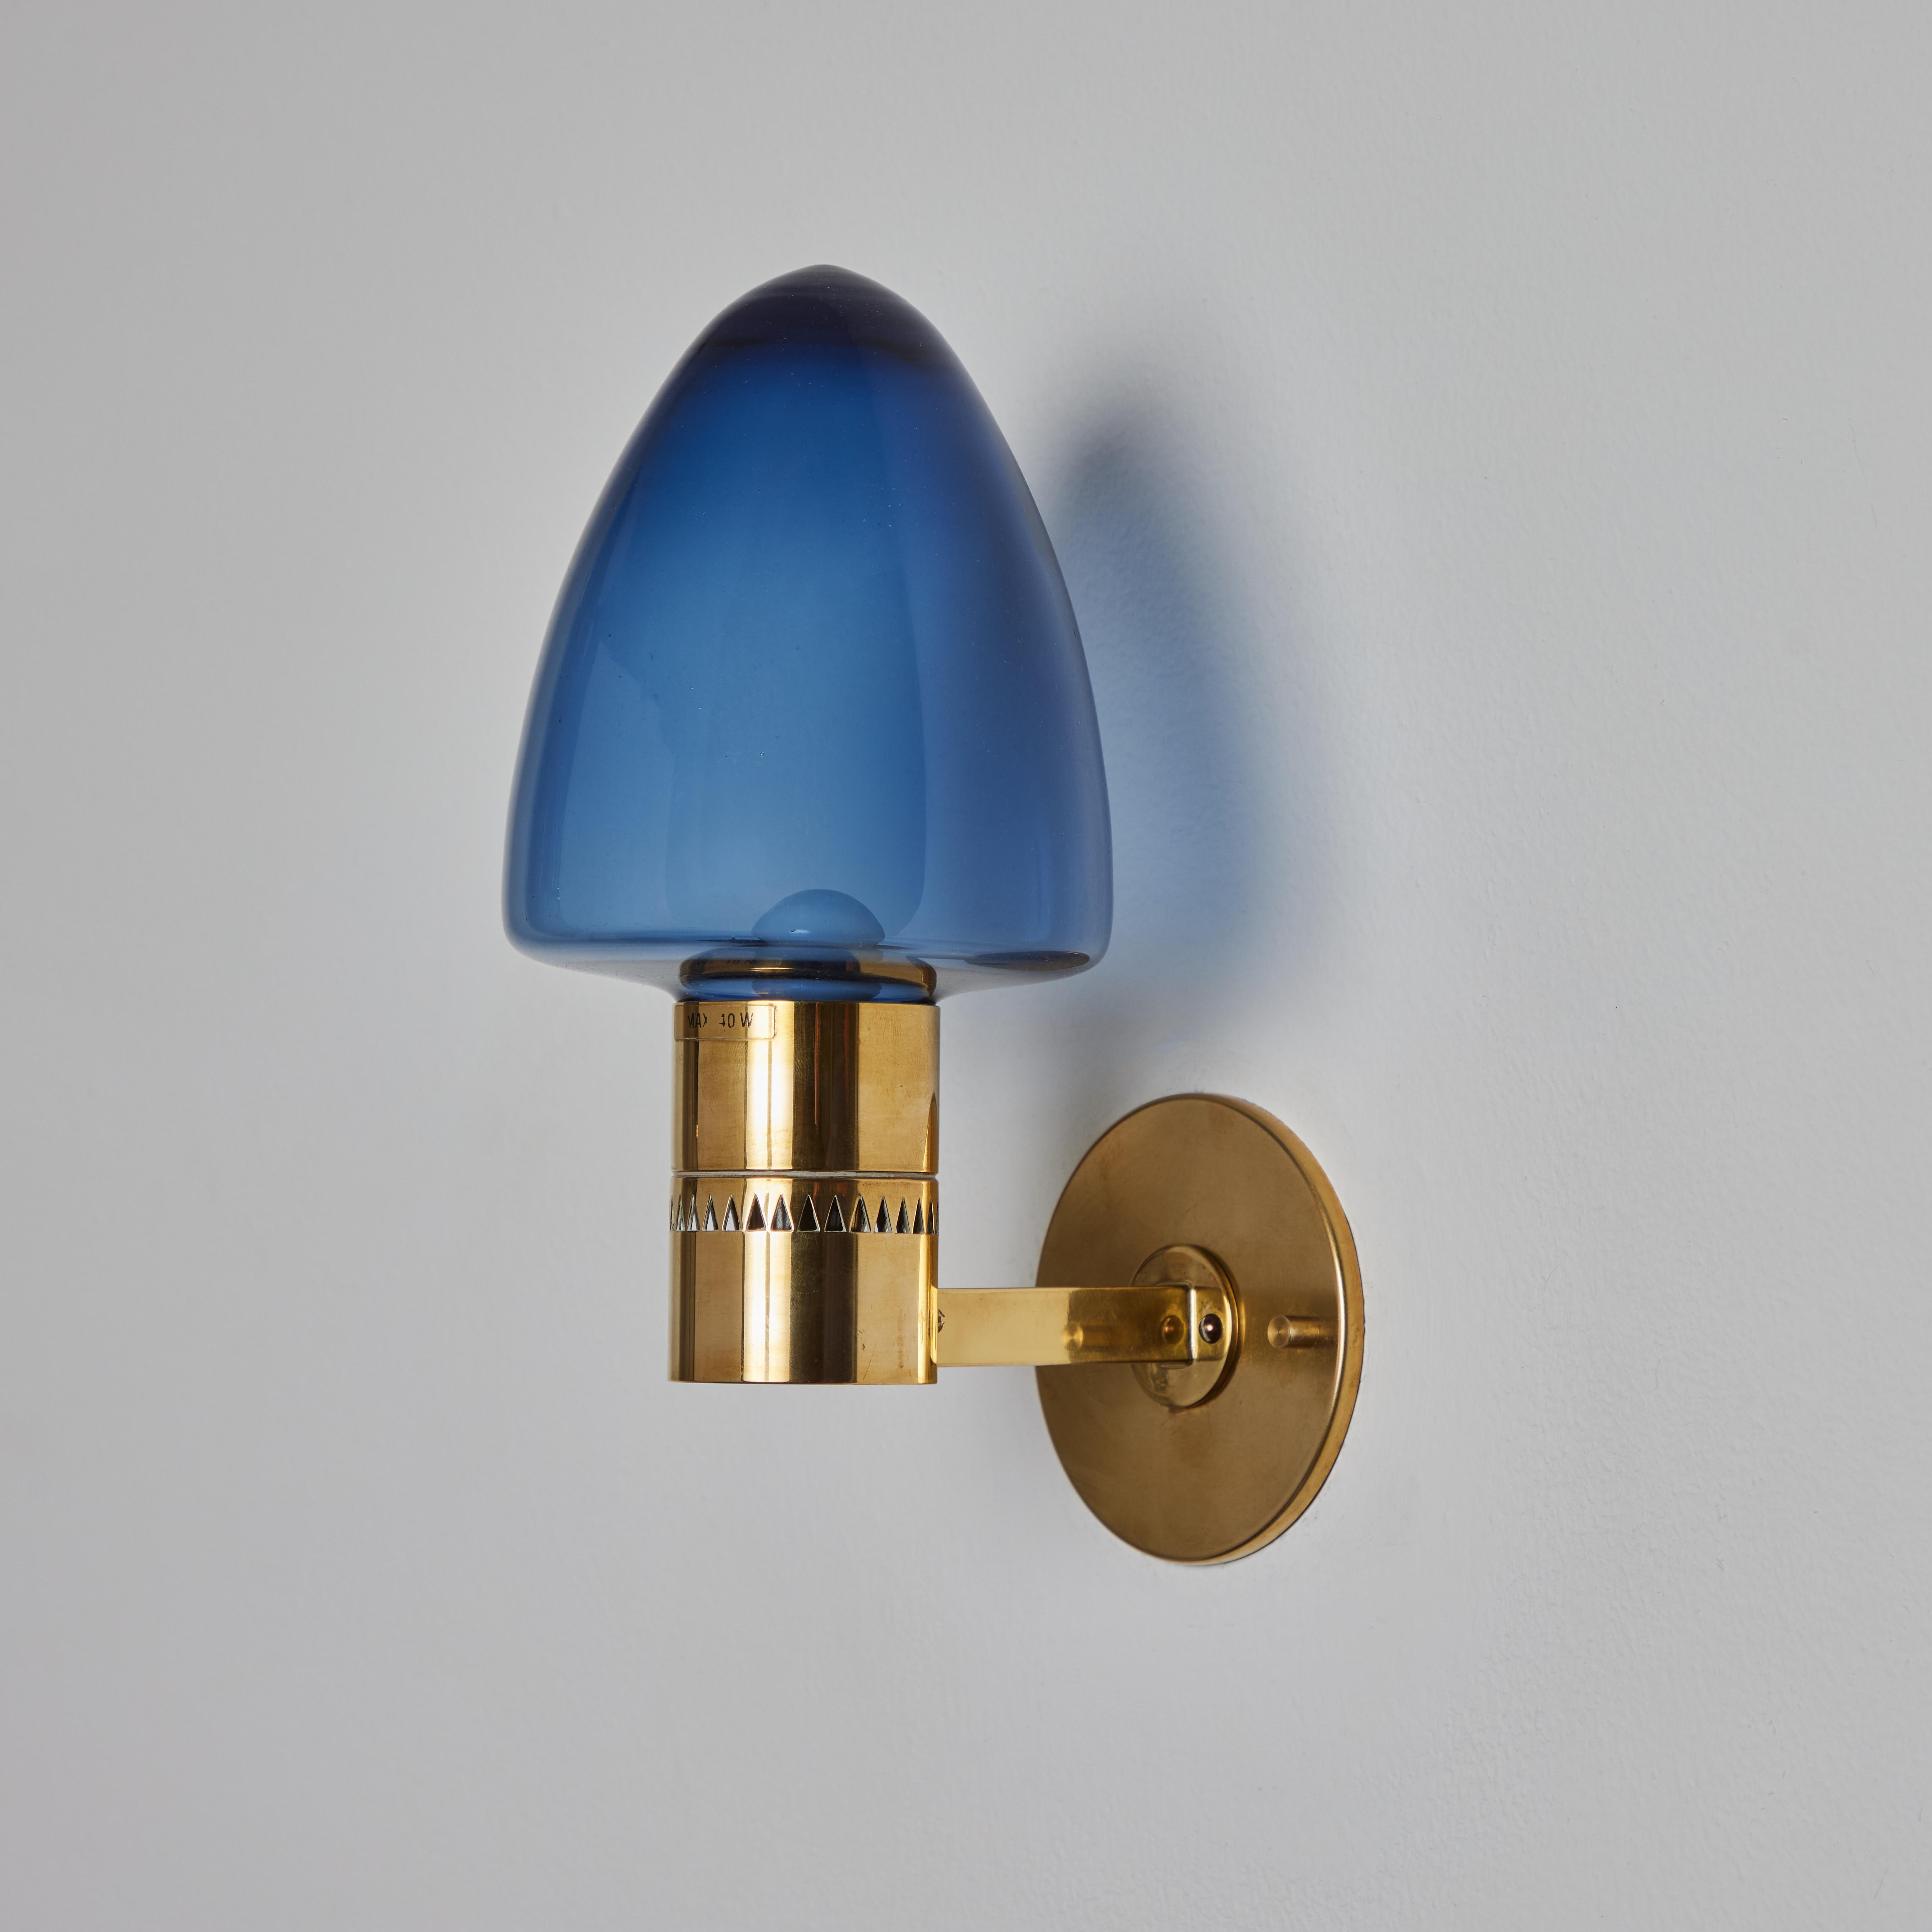 1960 Hans-Agne Jakobsson Model V-220 Brass & Blue Glass Sconce for Markaryd. Un design vintage incroyablement raffiné, typiquement suédois. Exécuté en laiton courbé et en verre soufflé teinté bleu.

Convient à une ampoule LED à culot candélabre